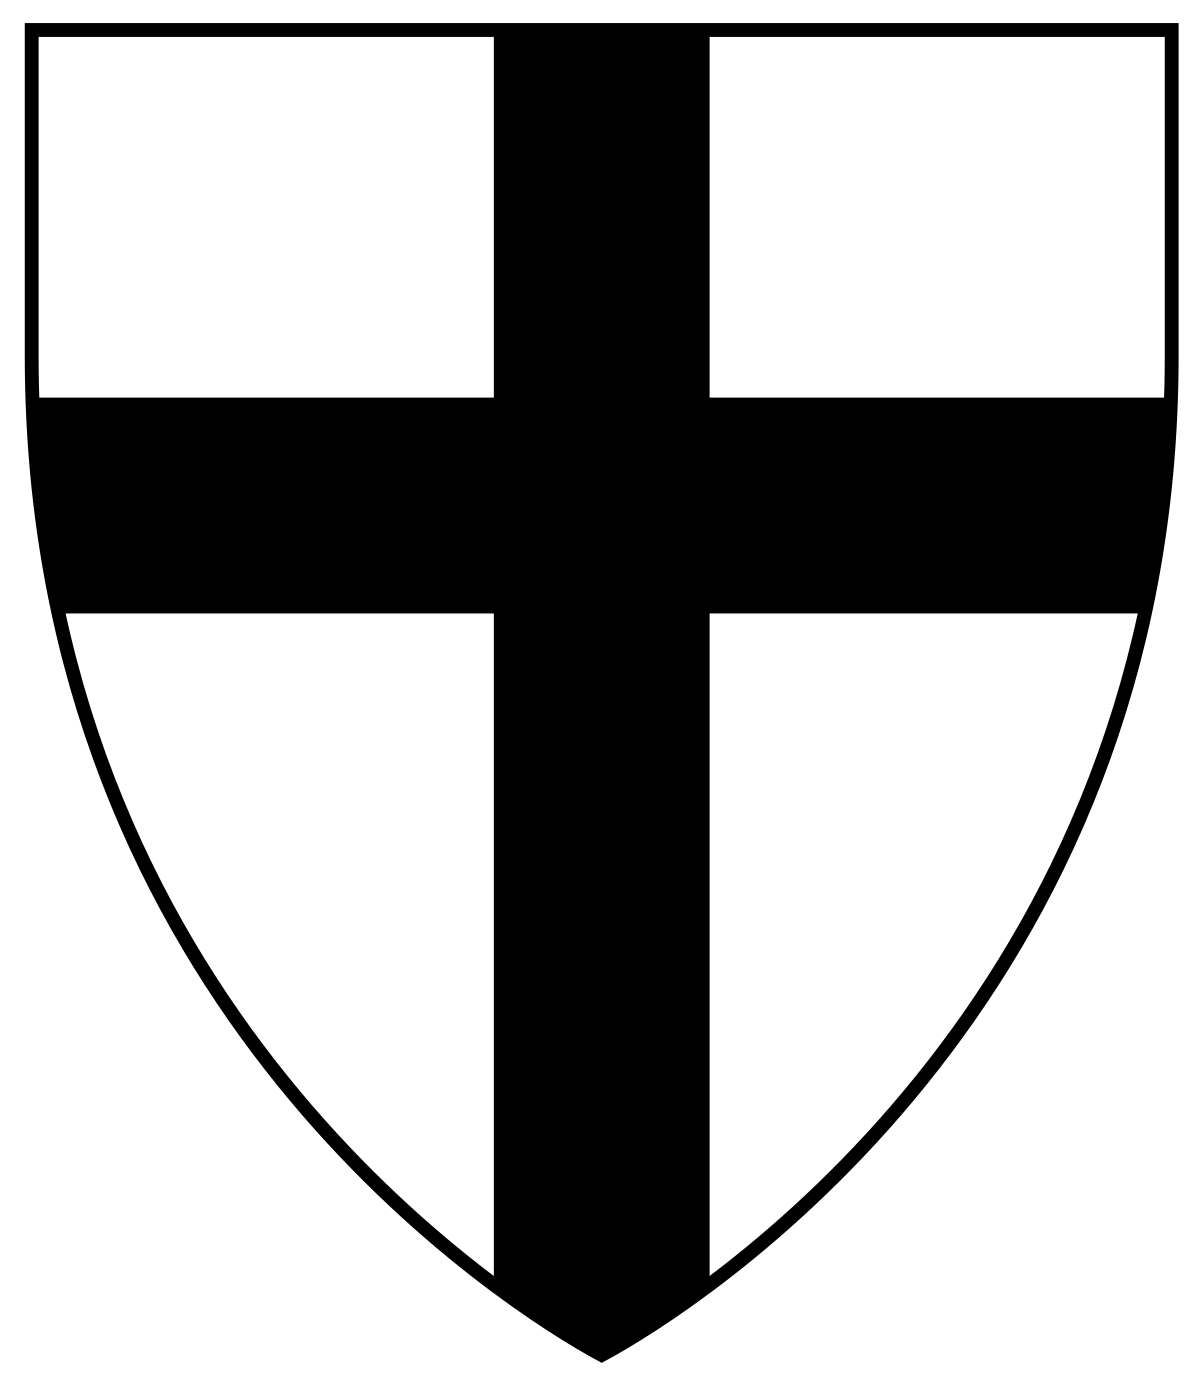 Black and White Cross Logo - Teutonic Order